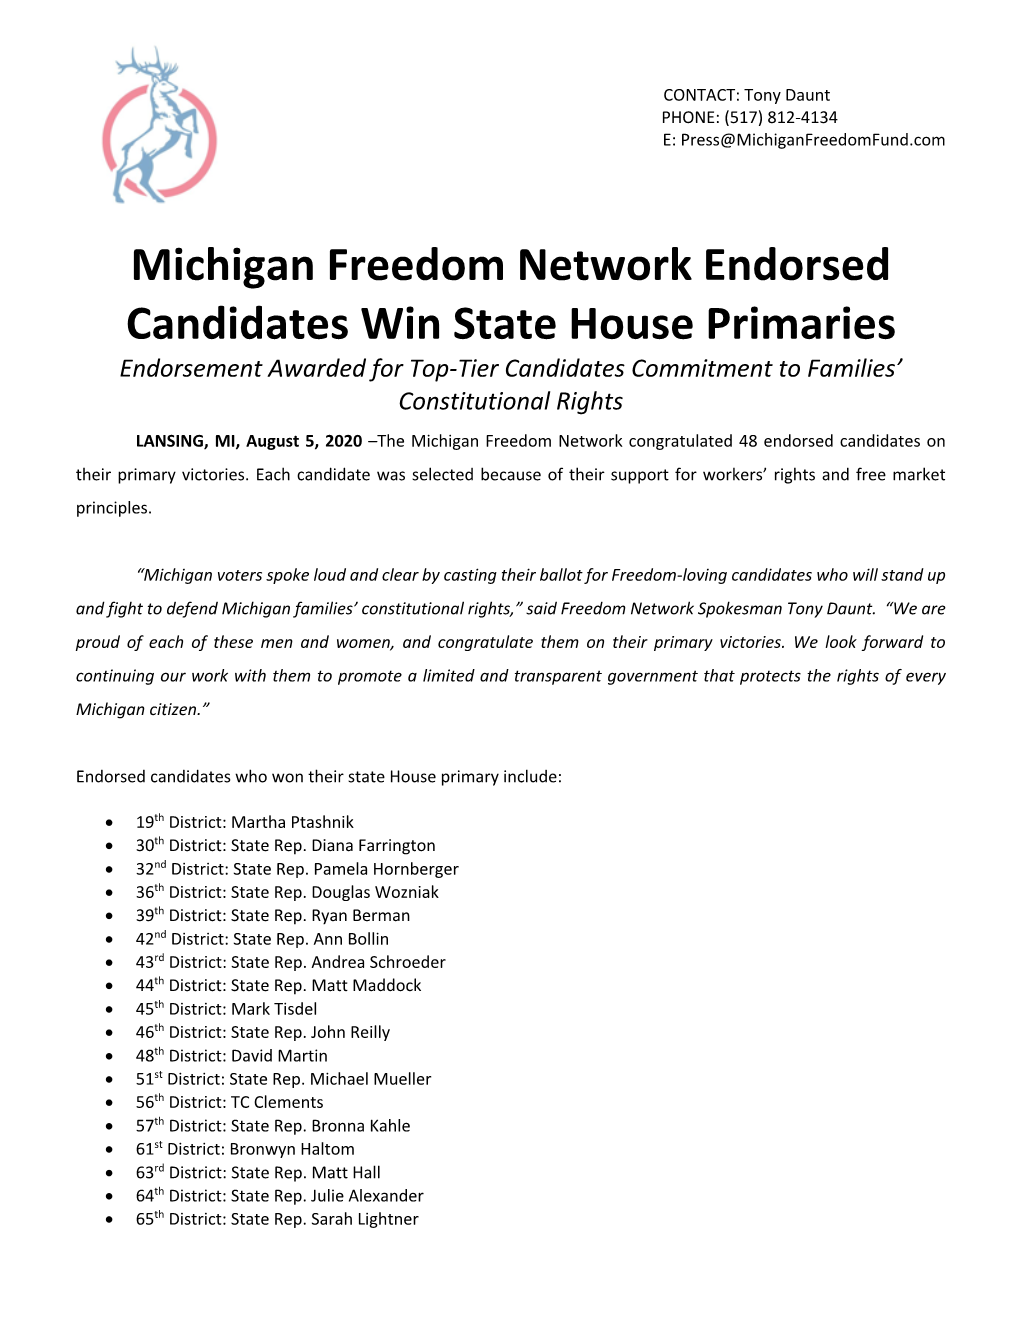 MFN Endorsed Candidates